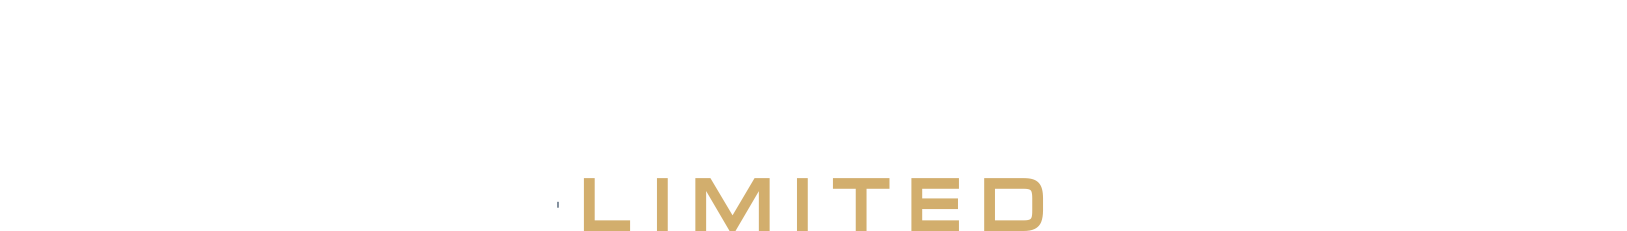 Altrecom Limited